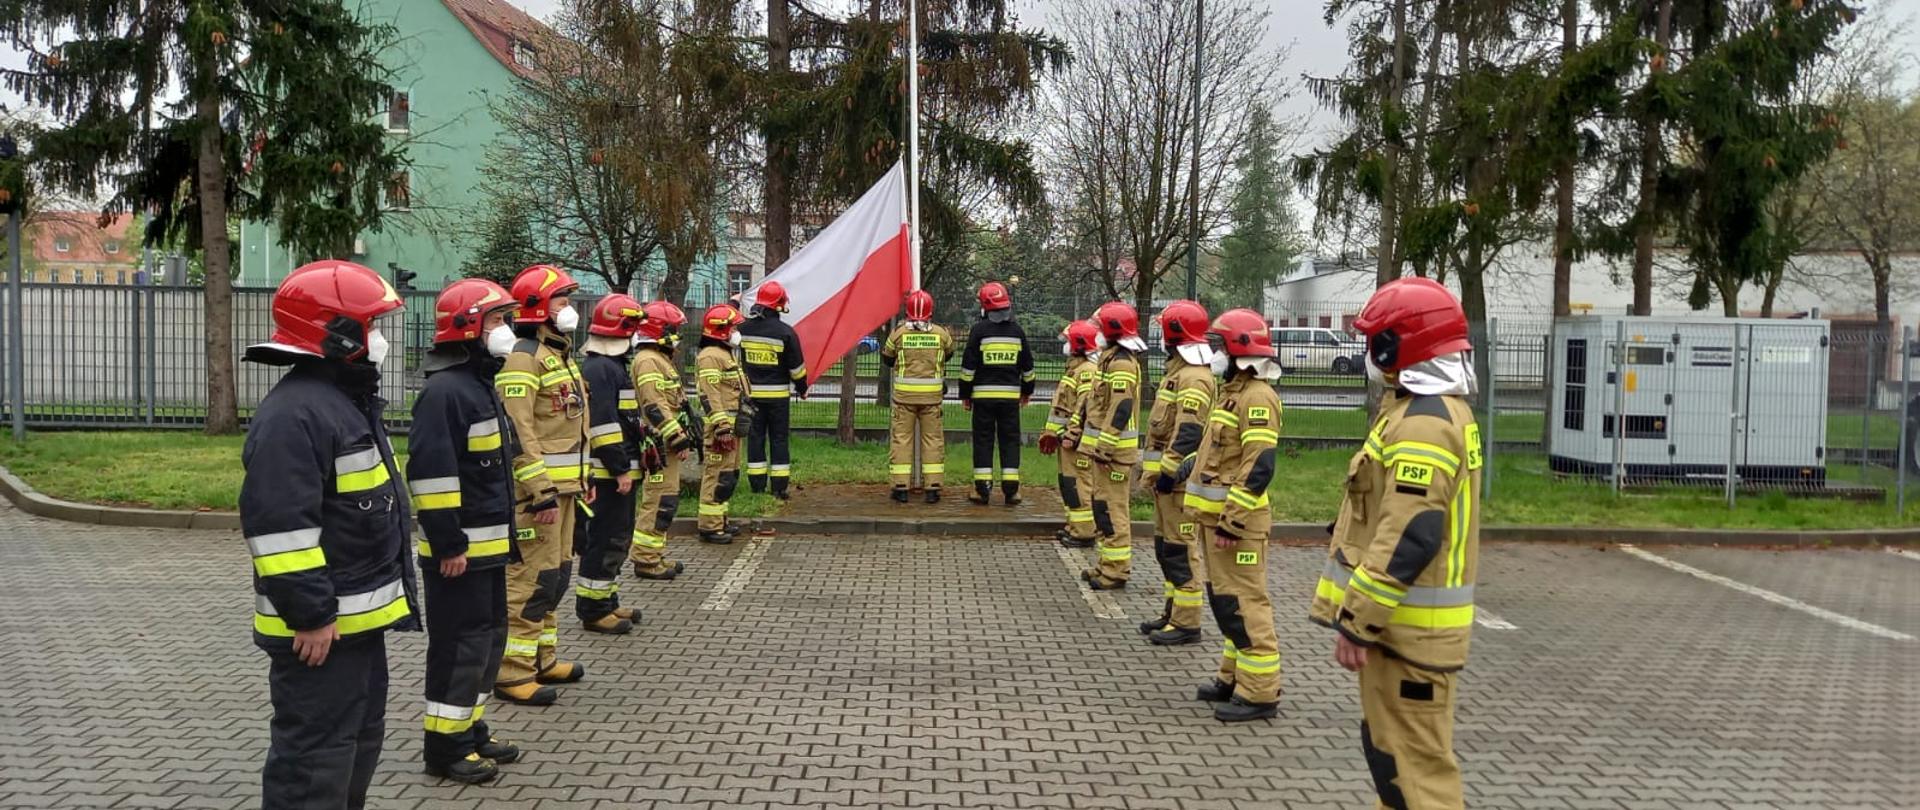 Strażacy w umundurowaniu specjalnym stojący w dwóch szeregach na przeciwko siebie. W tle maszt flagowy z zawieszoną u dołu flagą Polski i stojący przed masztem poczet flagowy.